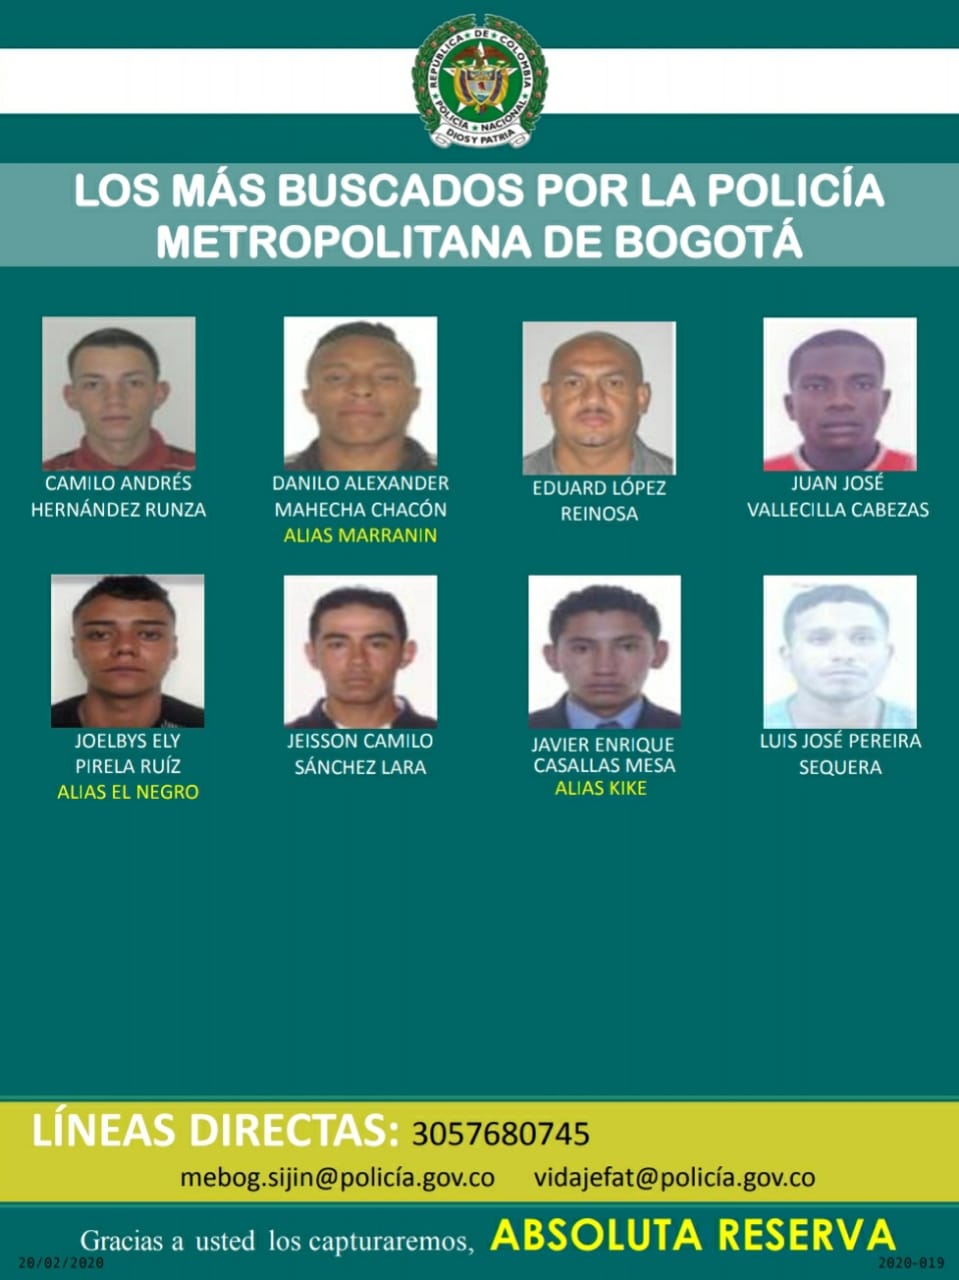 Son 8 las personas que buscan las autoridades - FOTO: Prensa Mebog